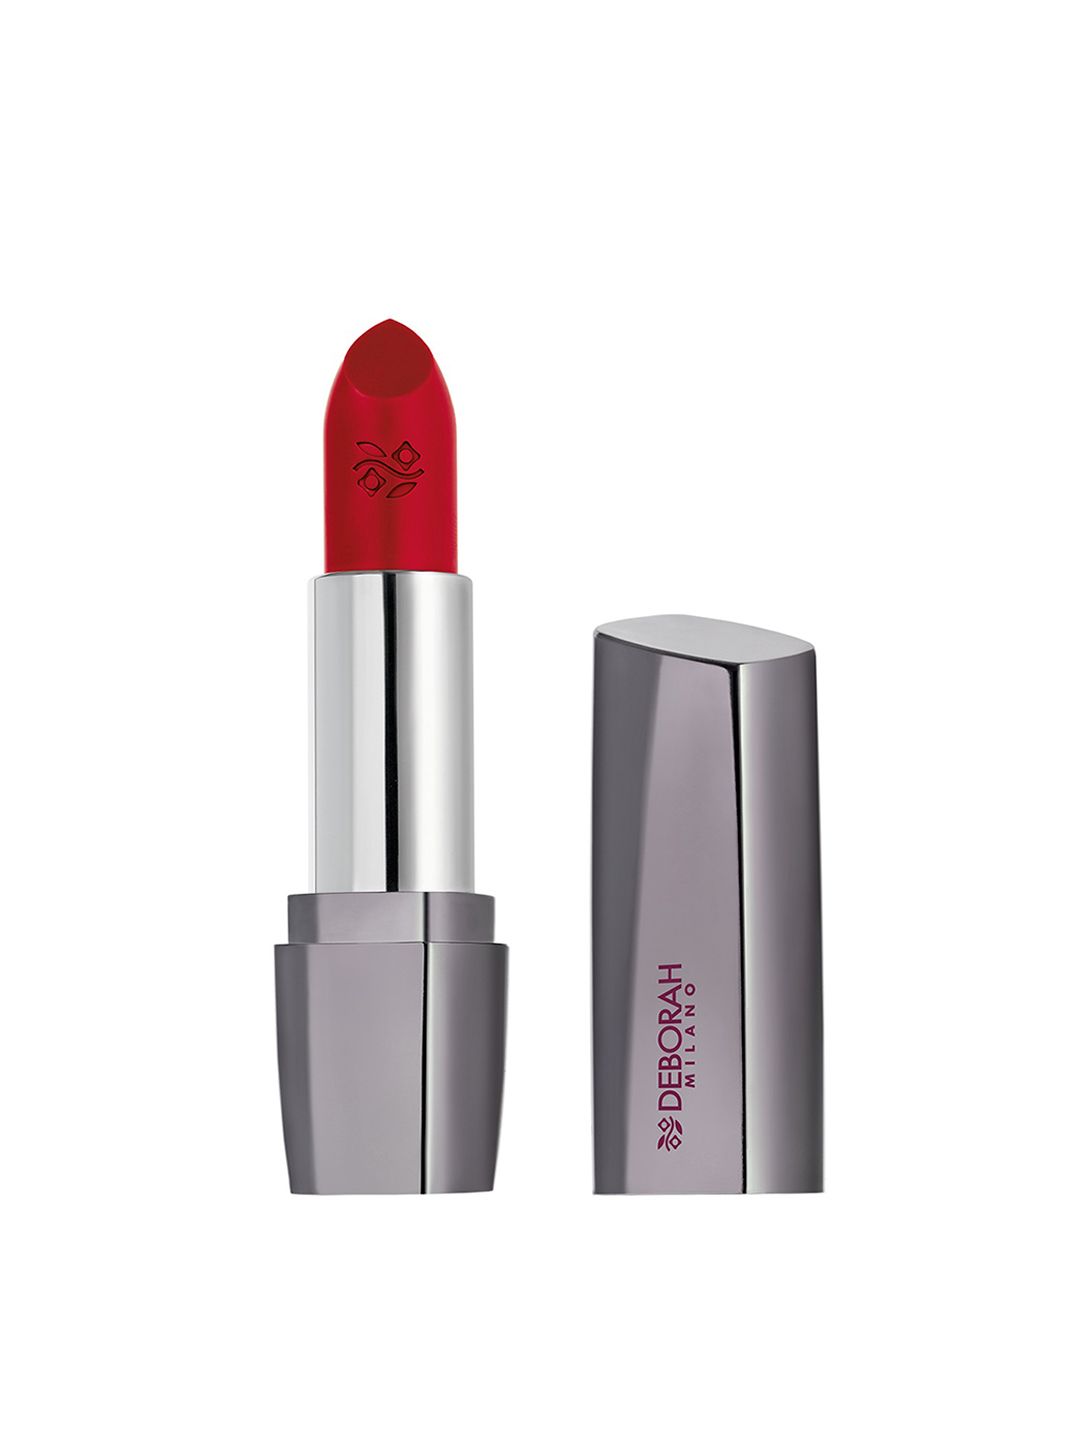 Deborah Milano Red Kiss Long Lasting Lipstick 10 Price in India